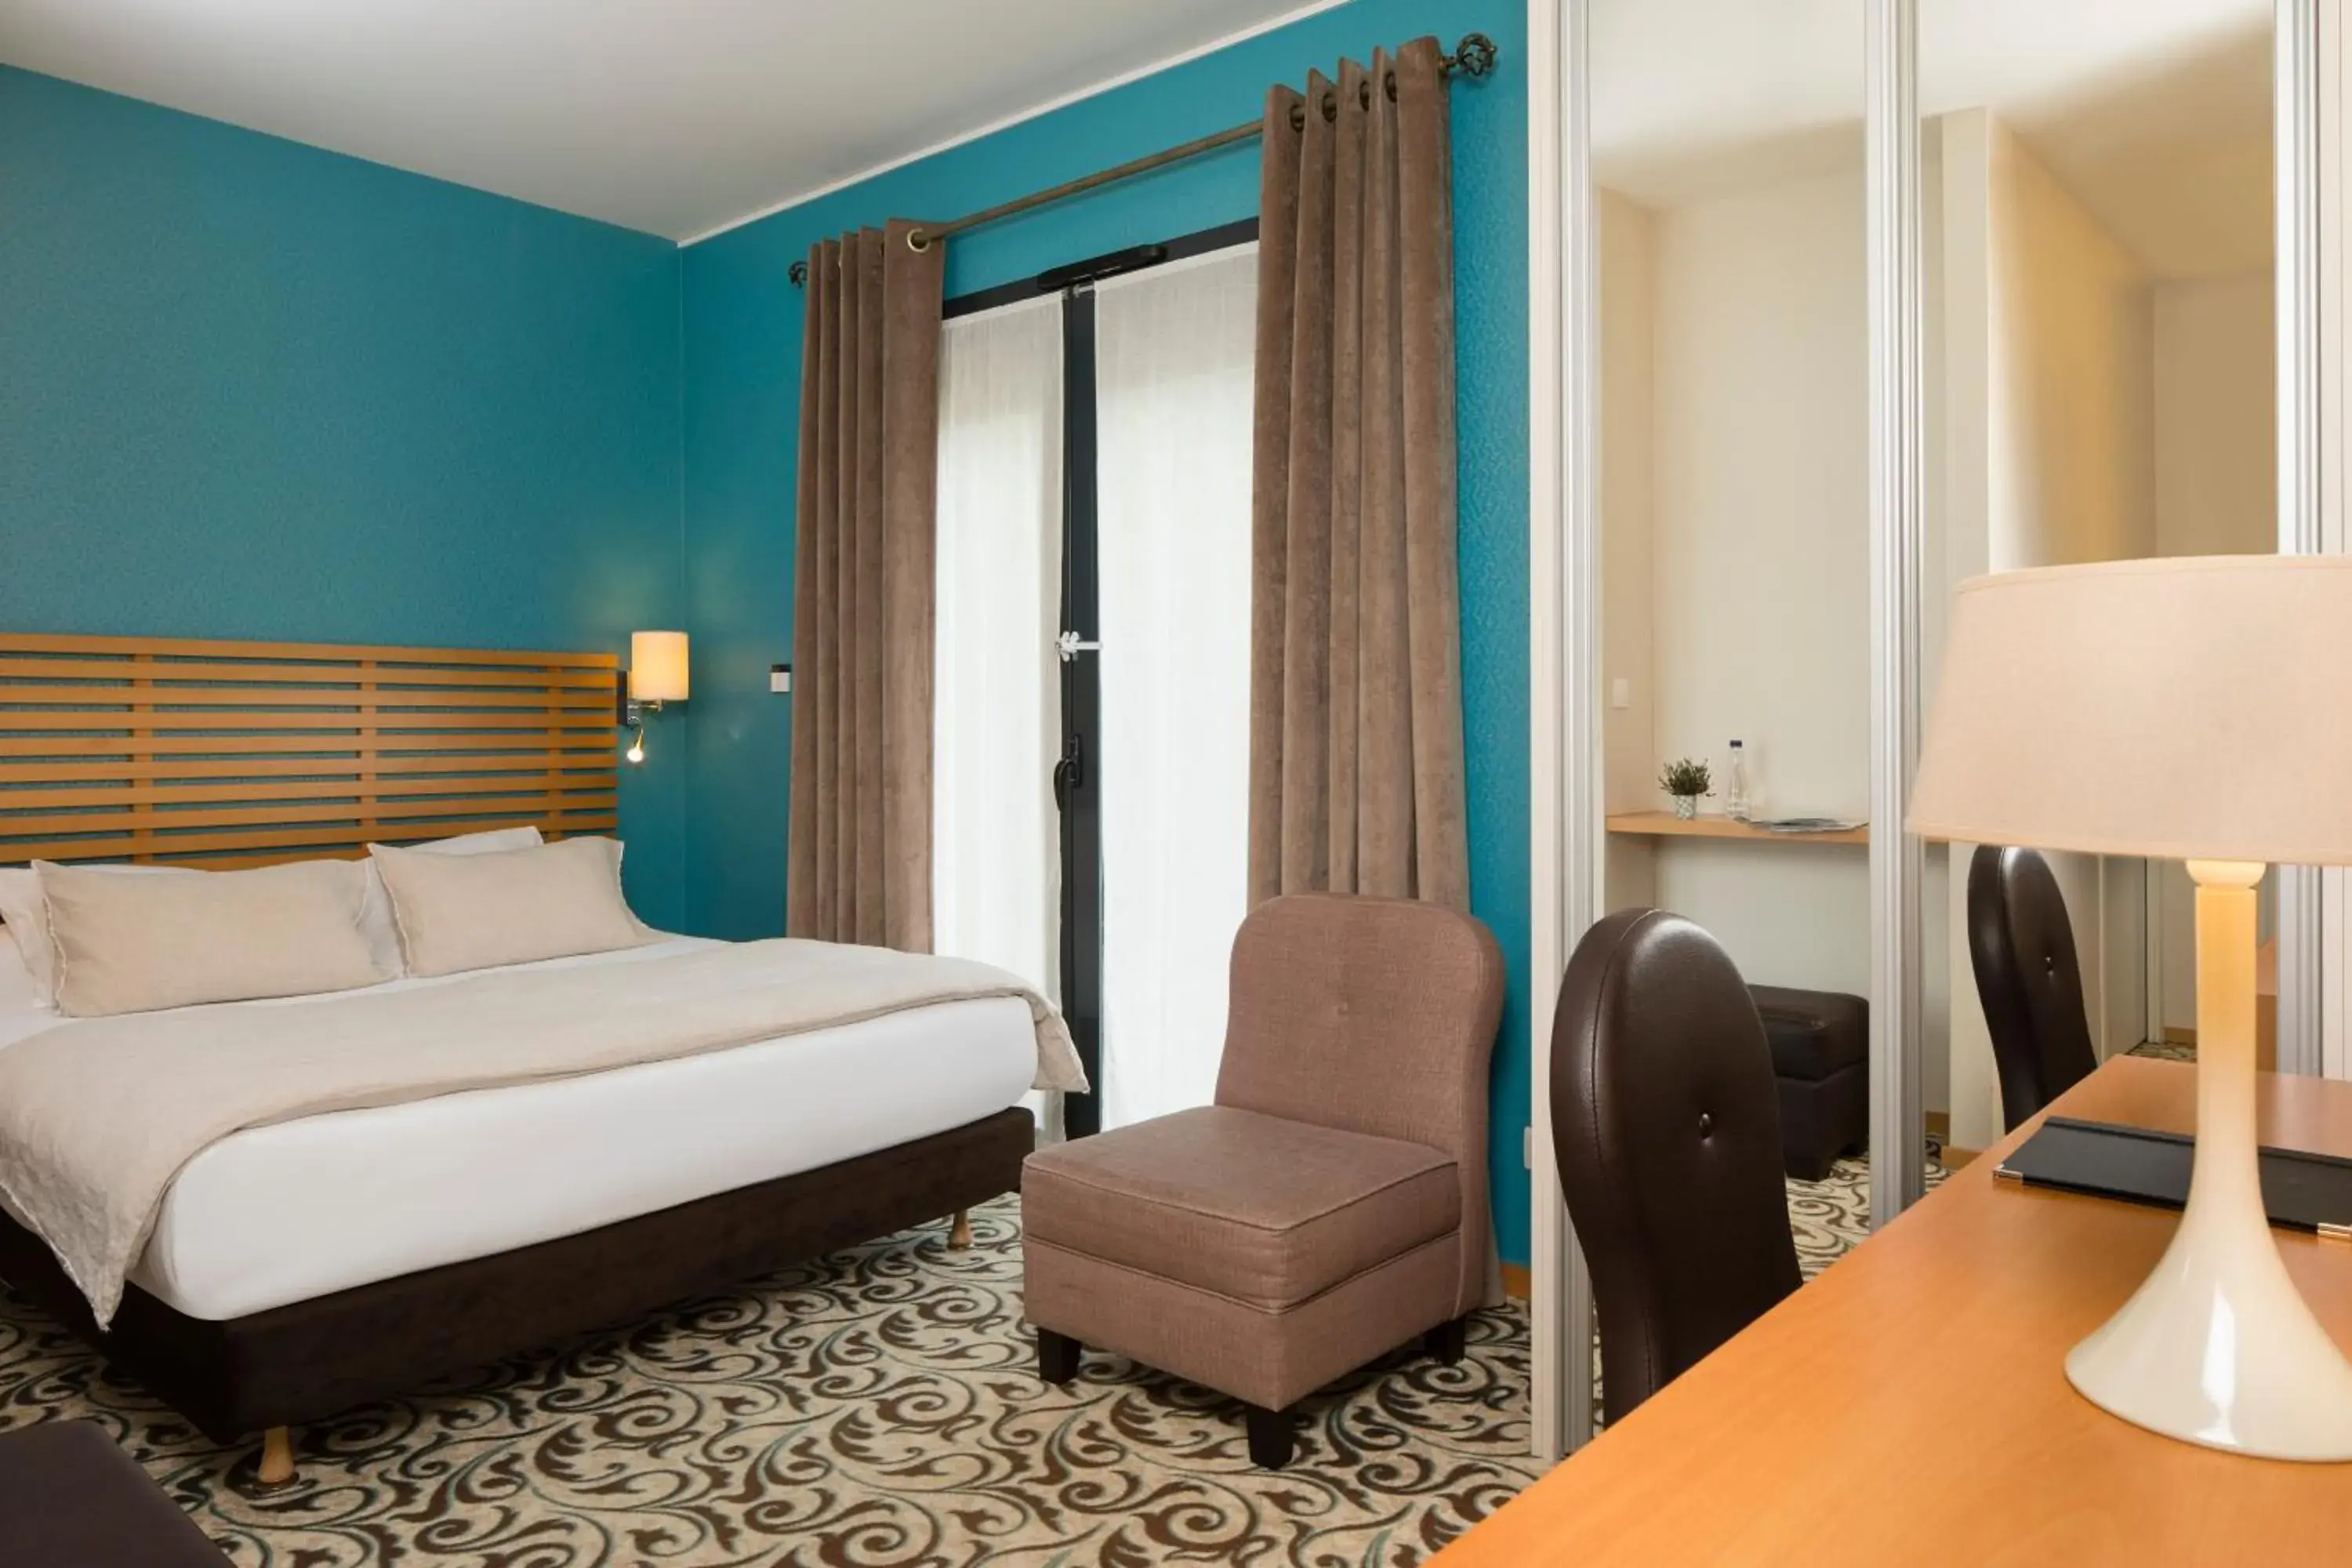 Bedroom, Bed in Best Western Plus Hotel De La Regate